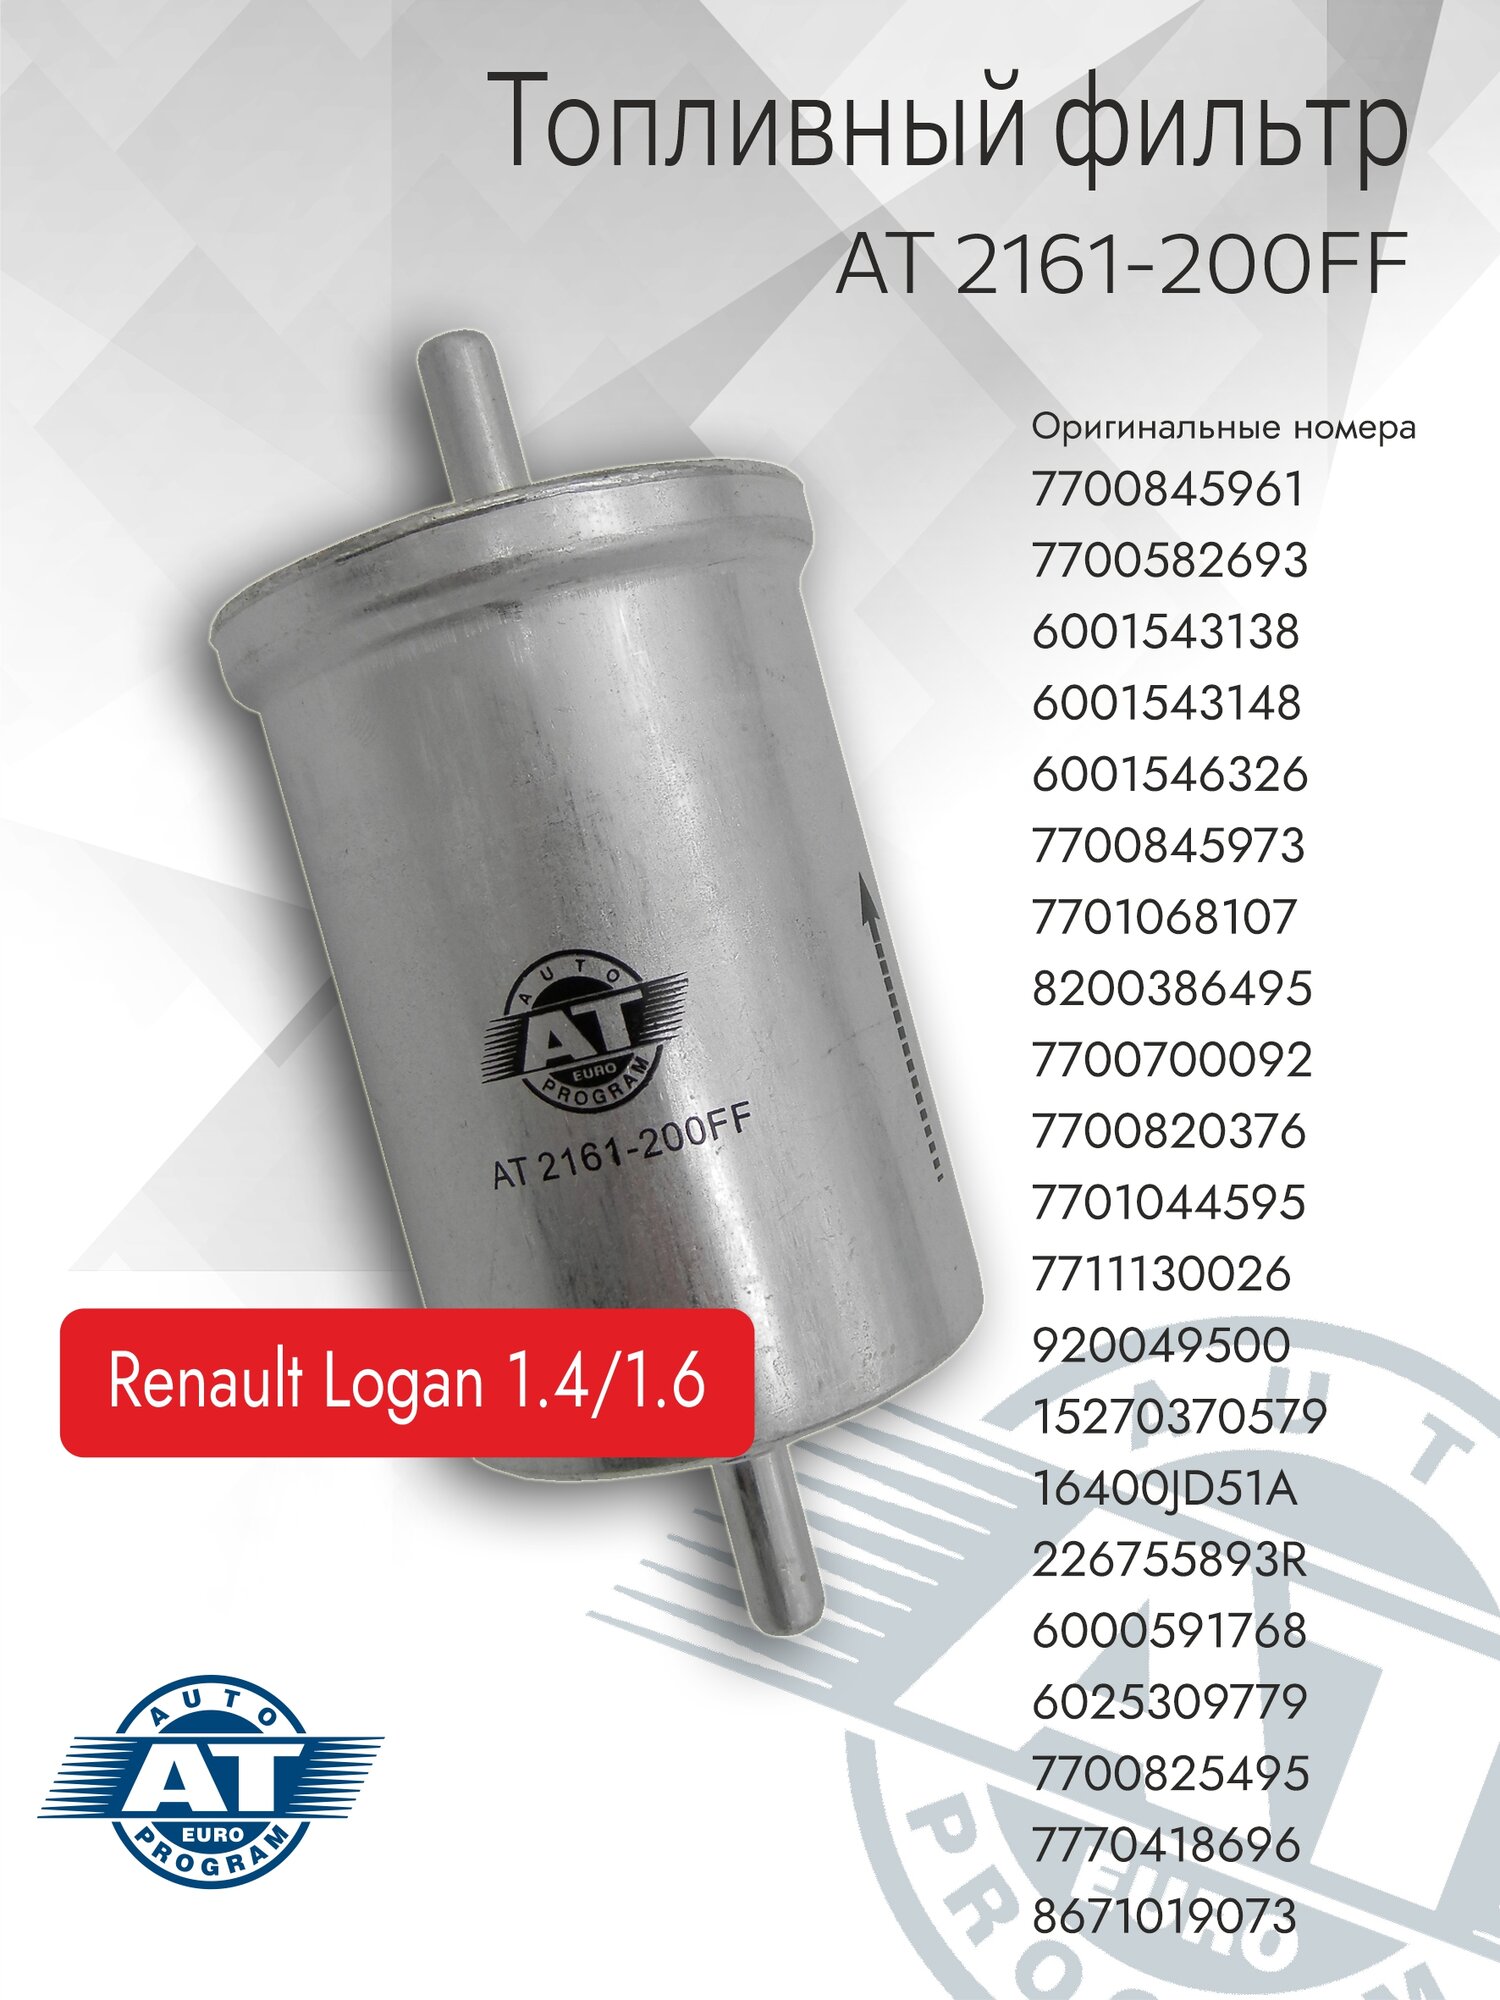 Фильтр топливный AT арт. AT 2161-200FF DACIA/RENAULT LOGAN 1.4/1.6